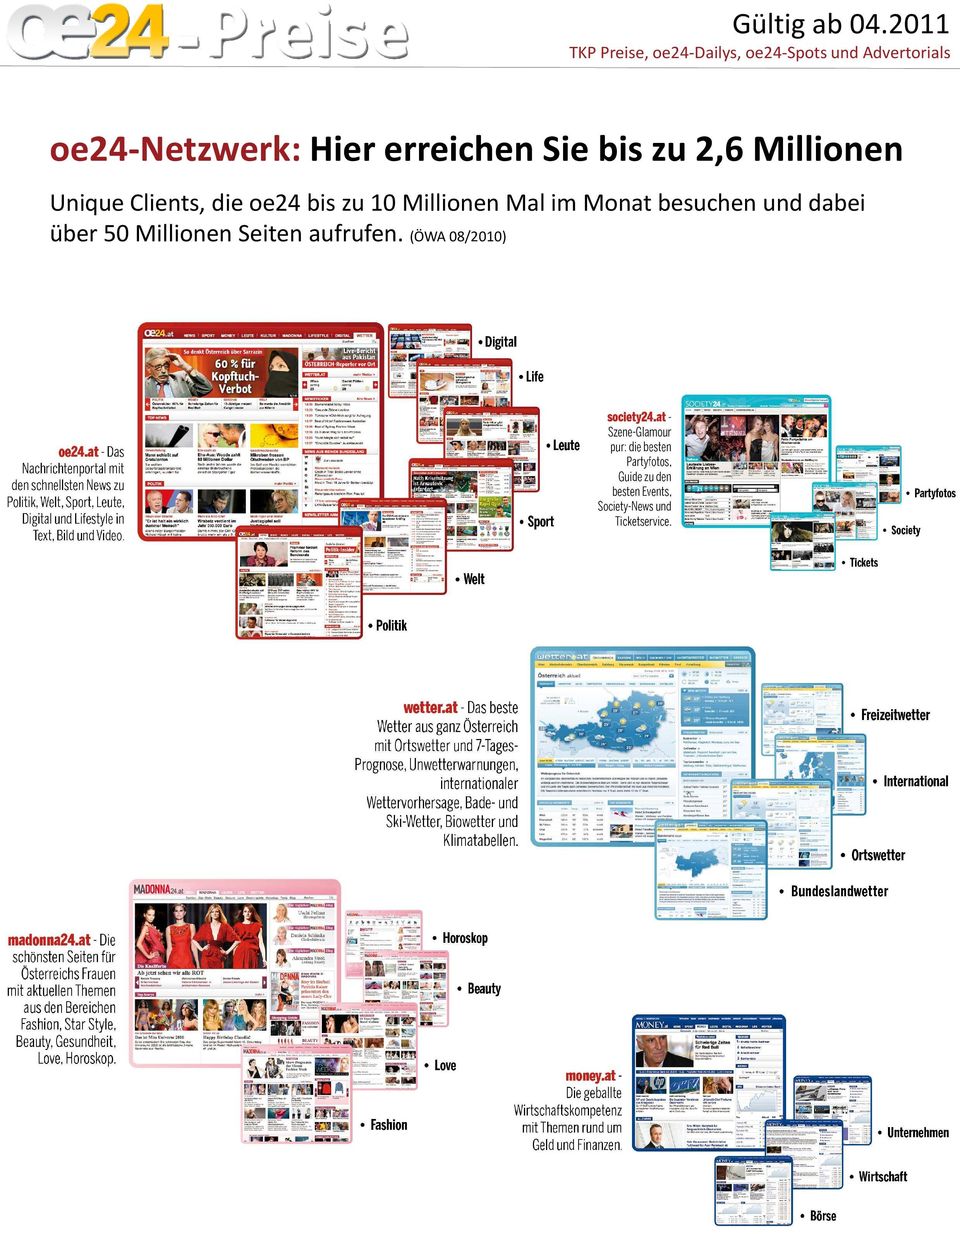 oe24-netzwerk: Hier erreichen Sie bis zu 2,6 Millionen Unique